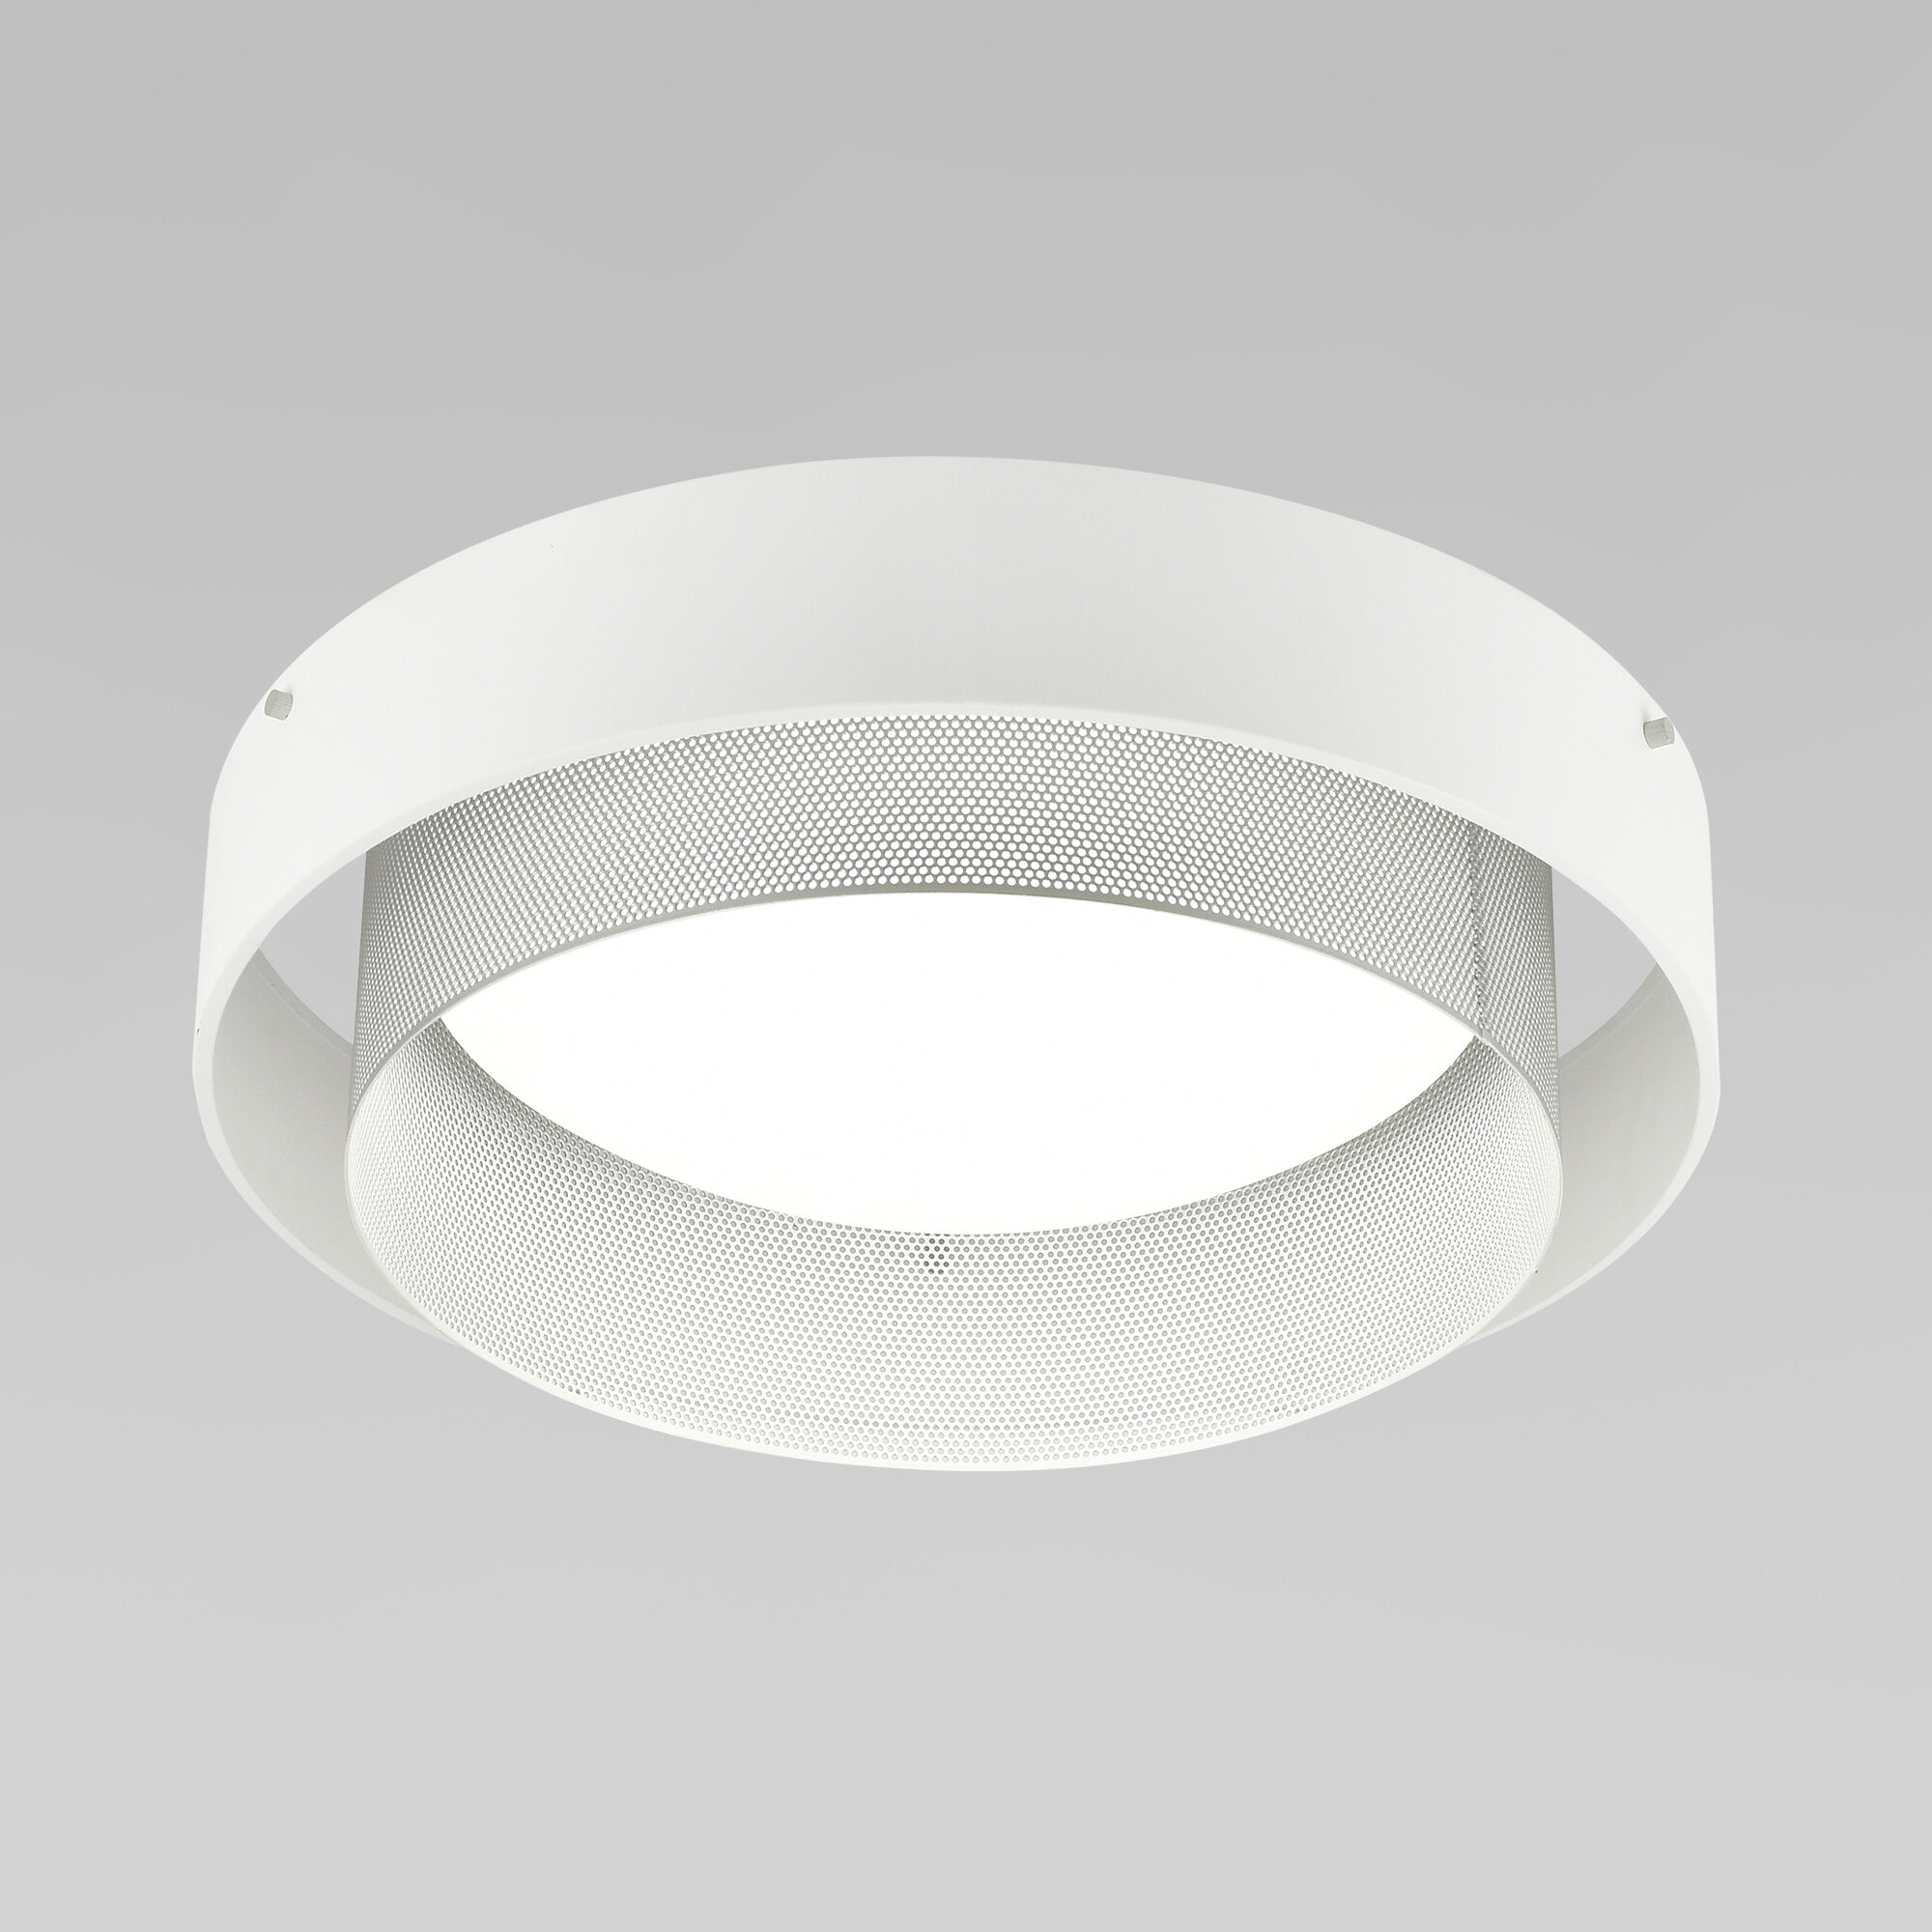 Умный потолочный светильник 90286/1 белый/серебро Smart 90286/1 белый/серебро Smart